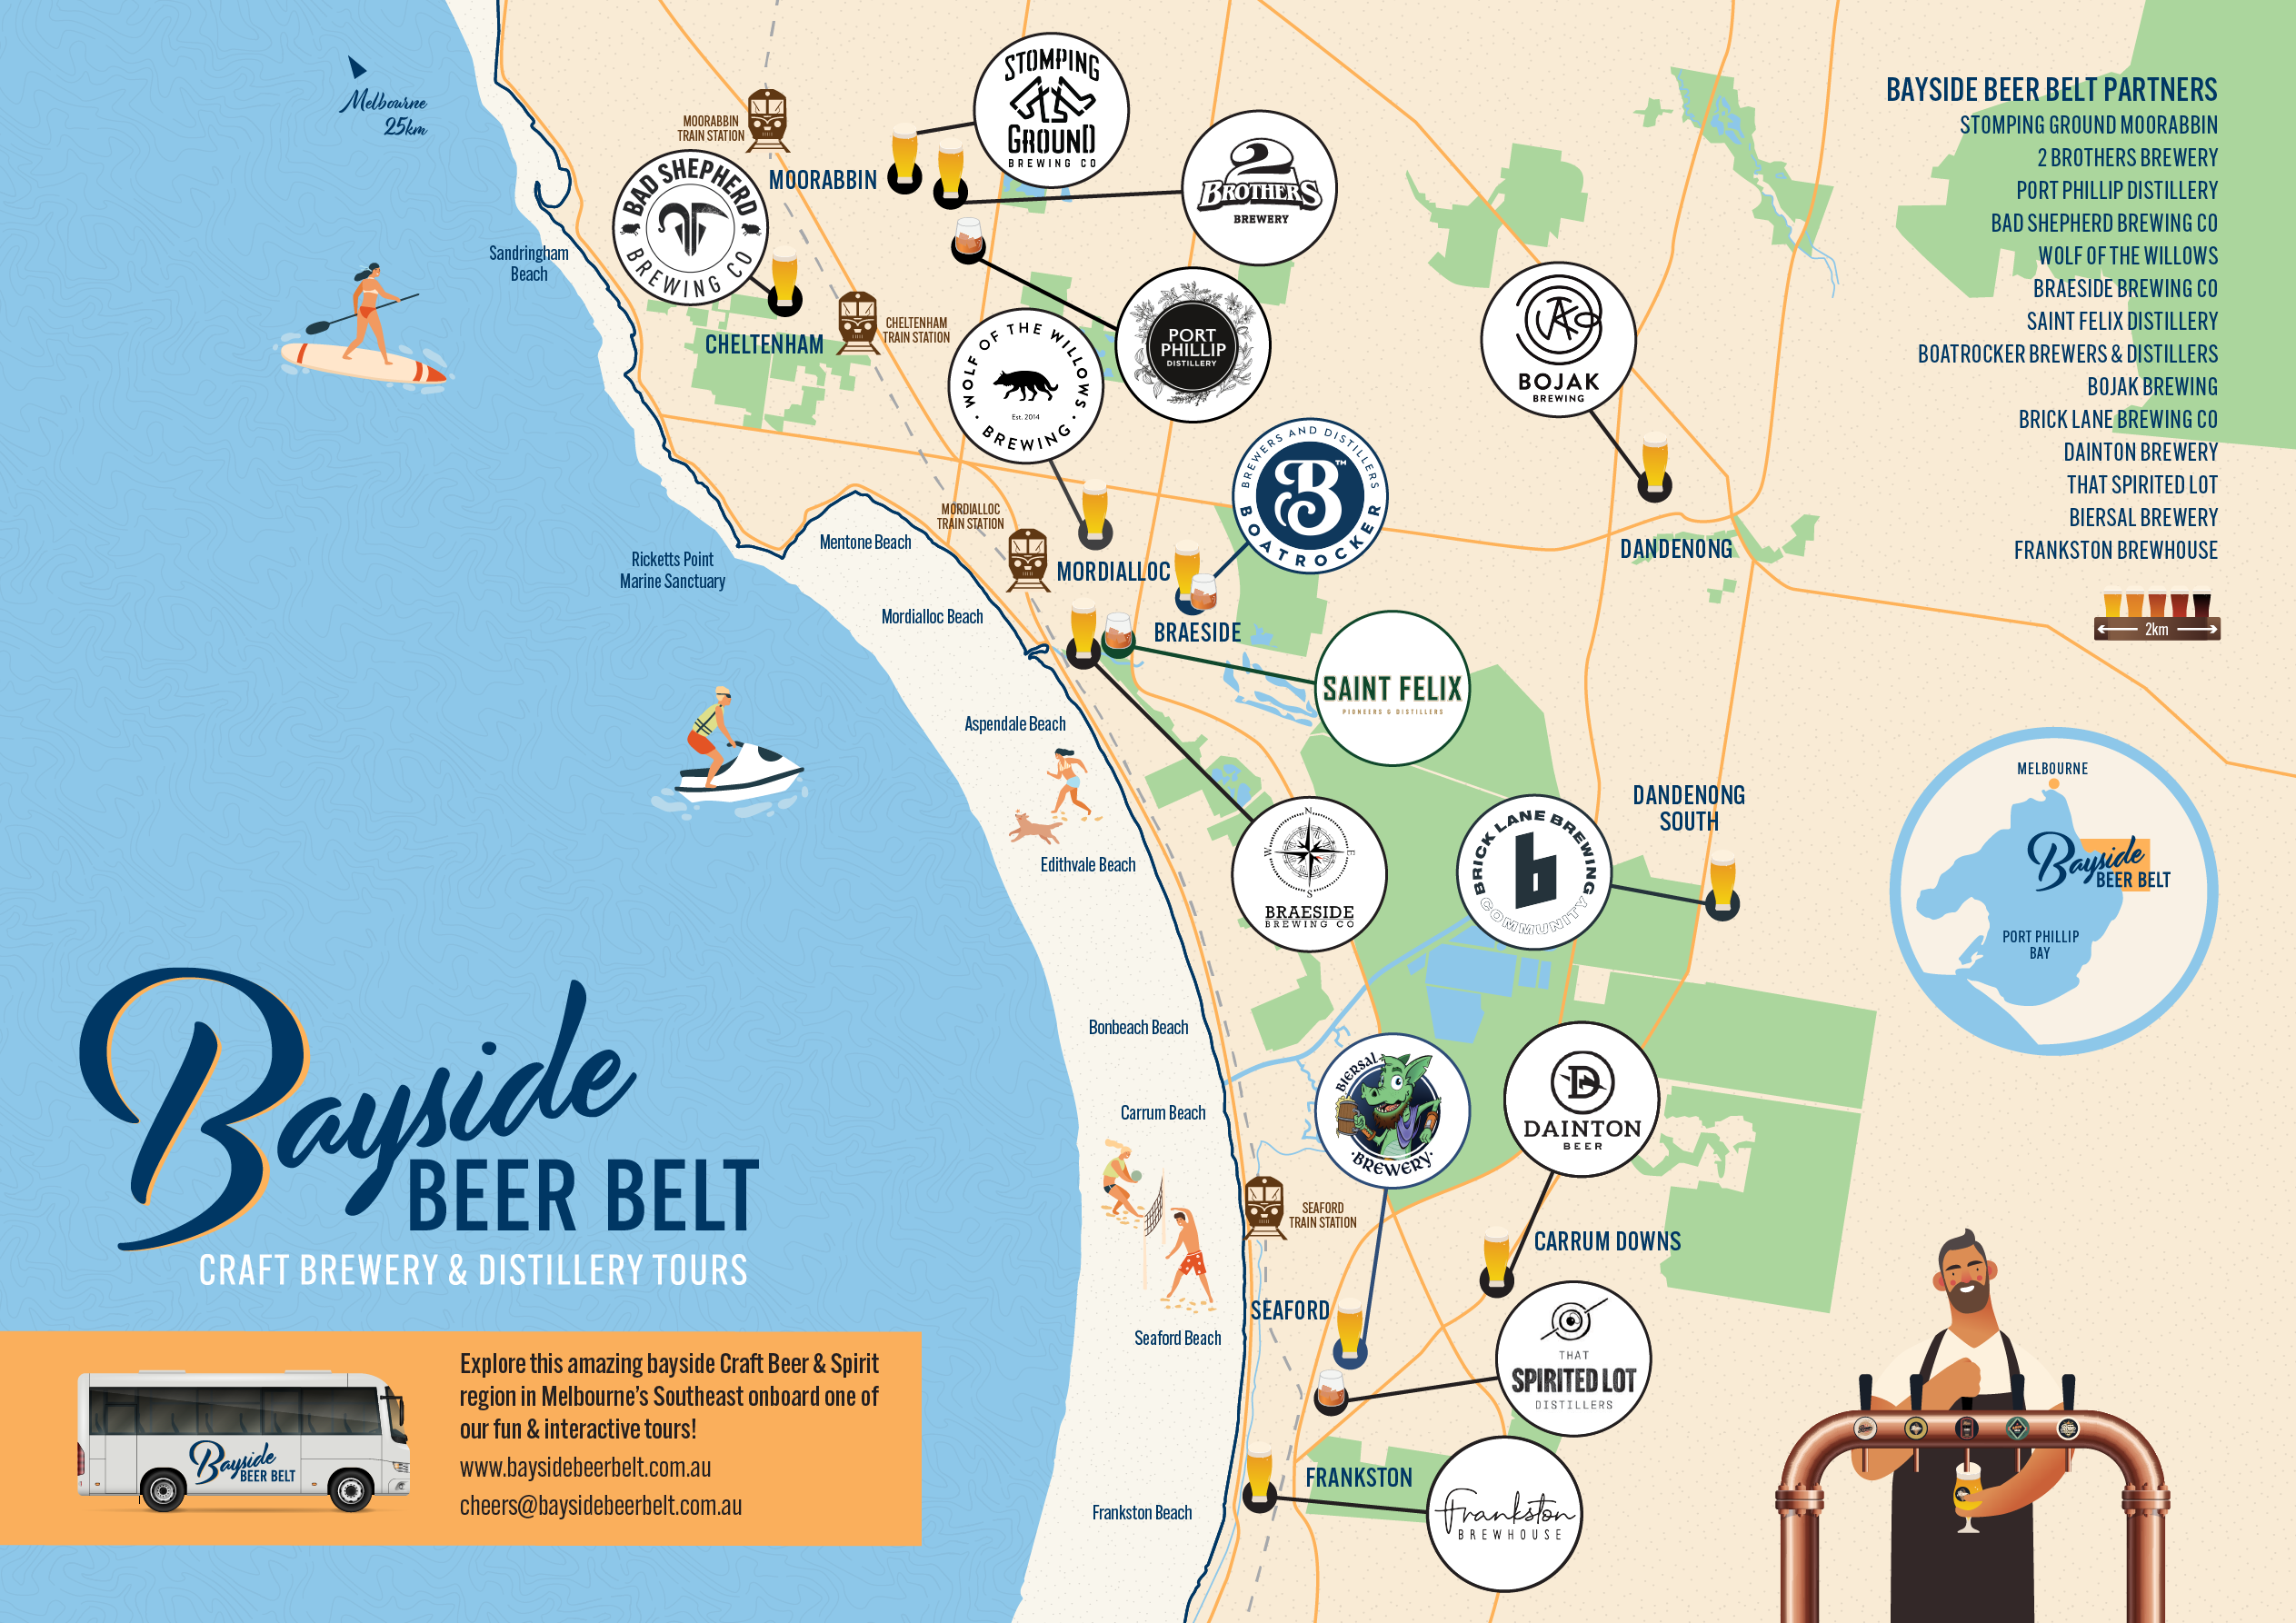 Bayside Beer Belt Hop On Hop Off Craft Brewery & Distillery Tours